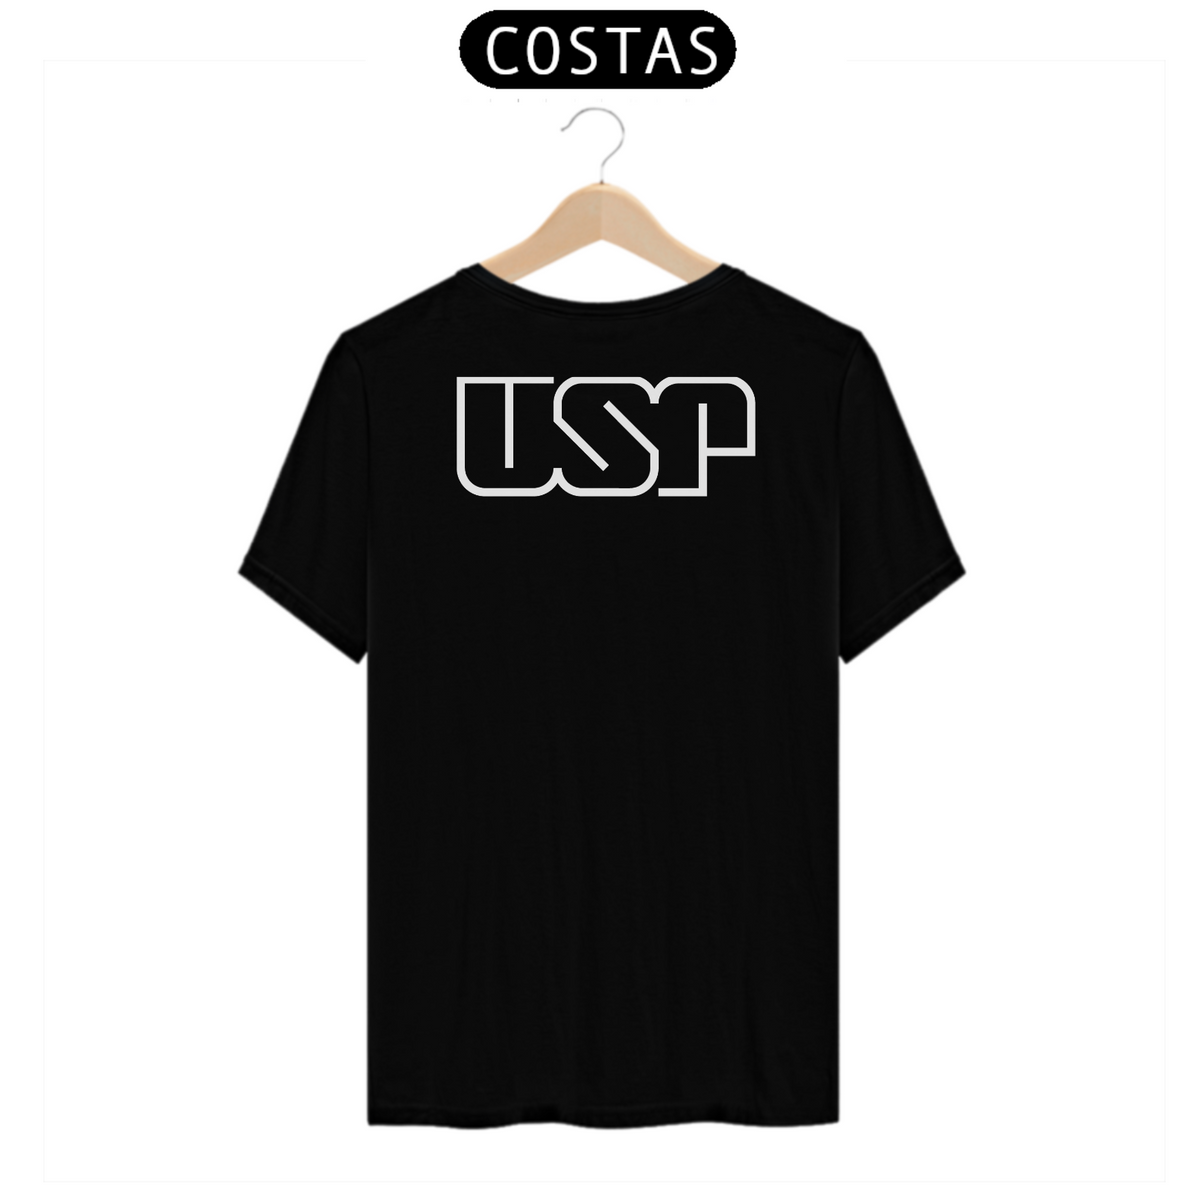 Nome do produto: Camiseta [USP] {cores diversas} - costas - logo branca